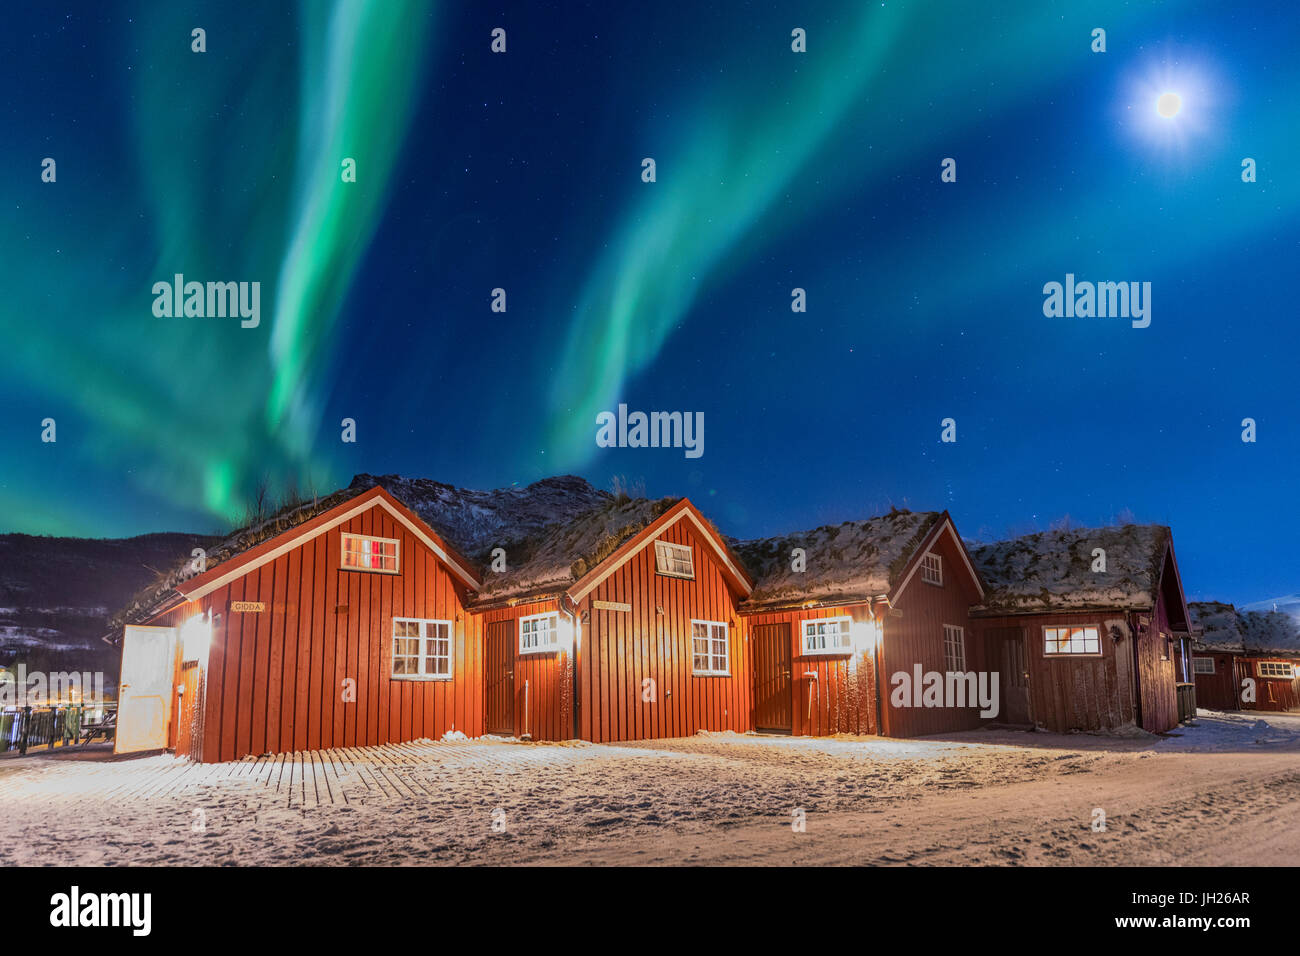 Las luces del norte y la luz de la luna hasta cabañas de madera típicos llamados Rorbu, Manndalen, Kafjord, Lyngen Alpes, Troms, Noruega Foto de stock